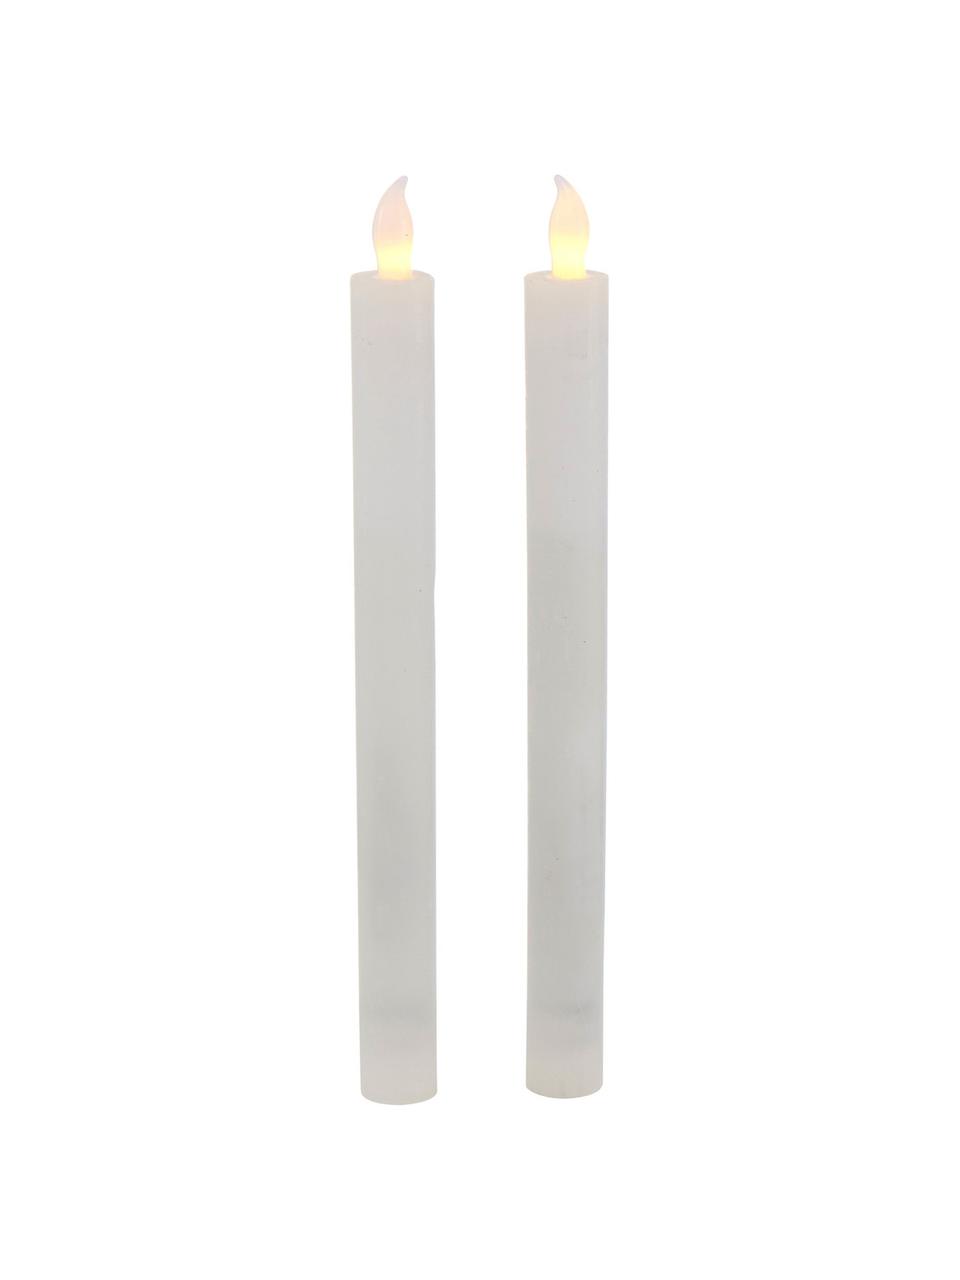 LED Kerzen Vilago, 2 Stück, Wachs, Weiss, Ø 2 x H 24 cm